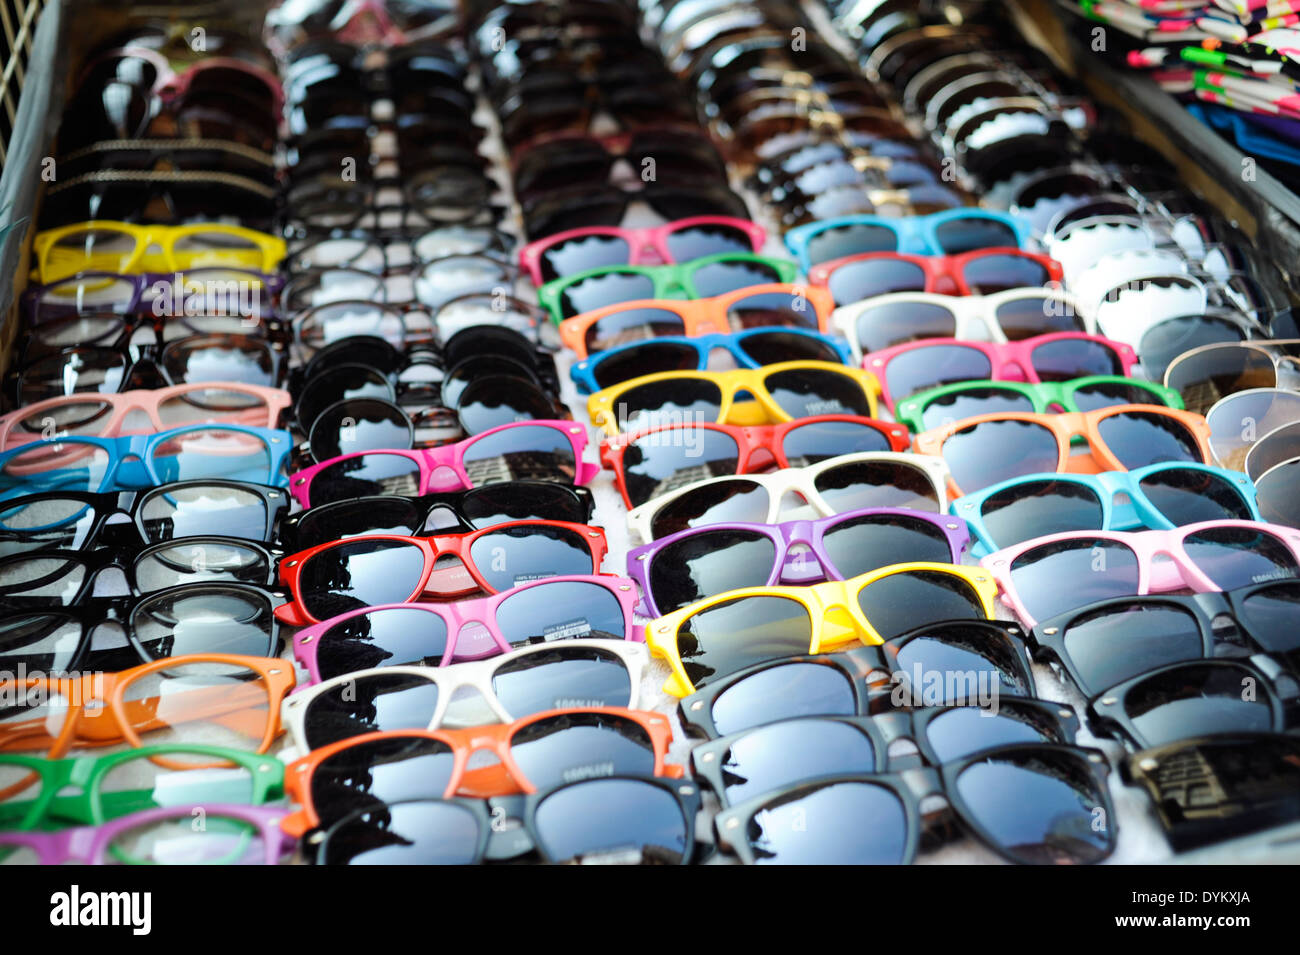 Billige Sonnenbrillen für Verkauf durch eine Straße Ecke Anbieter. Stockfoto